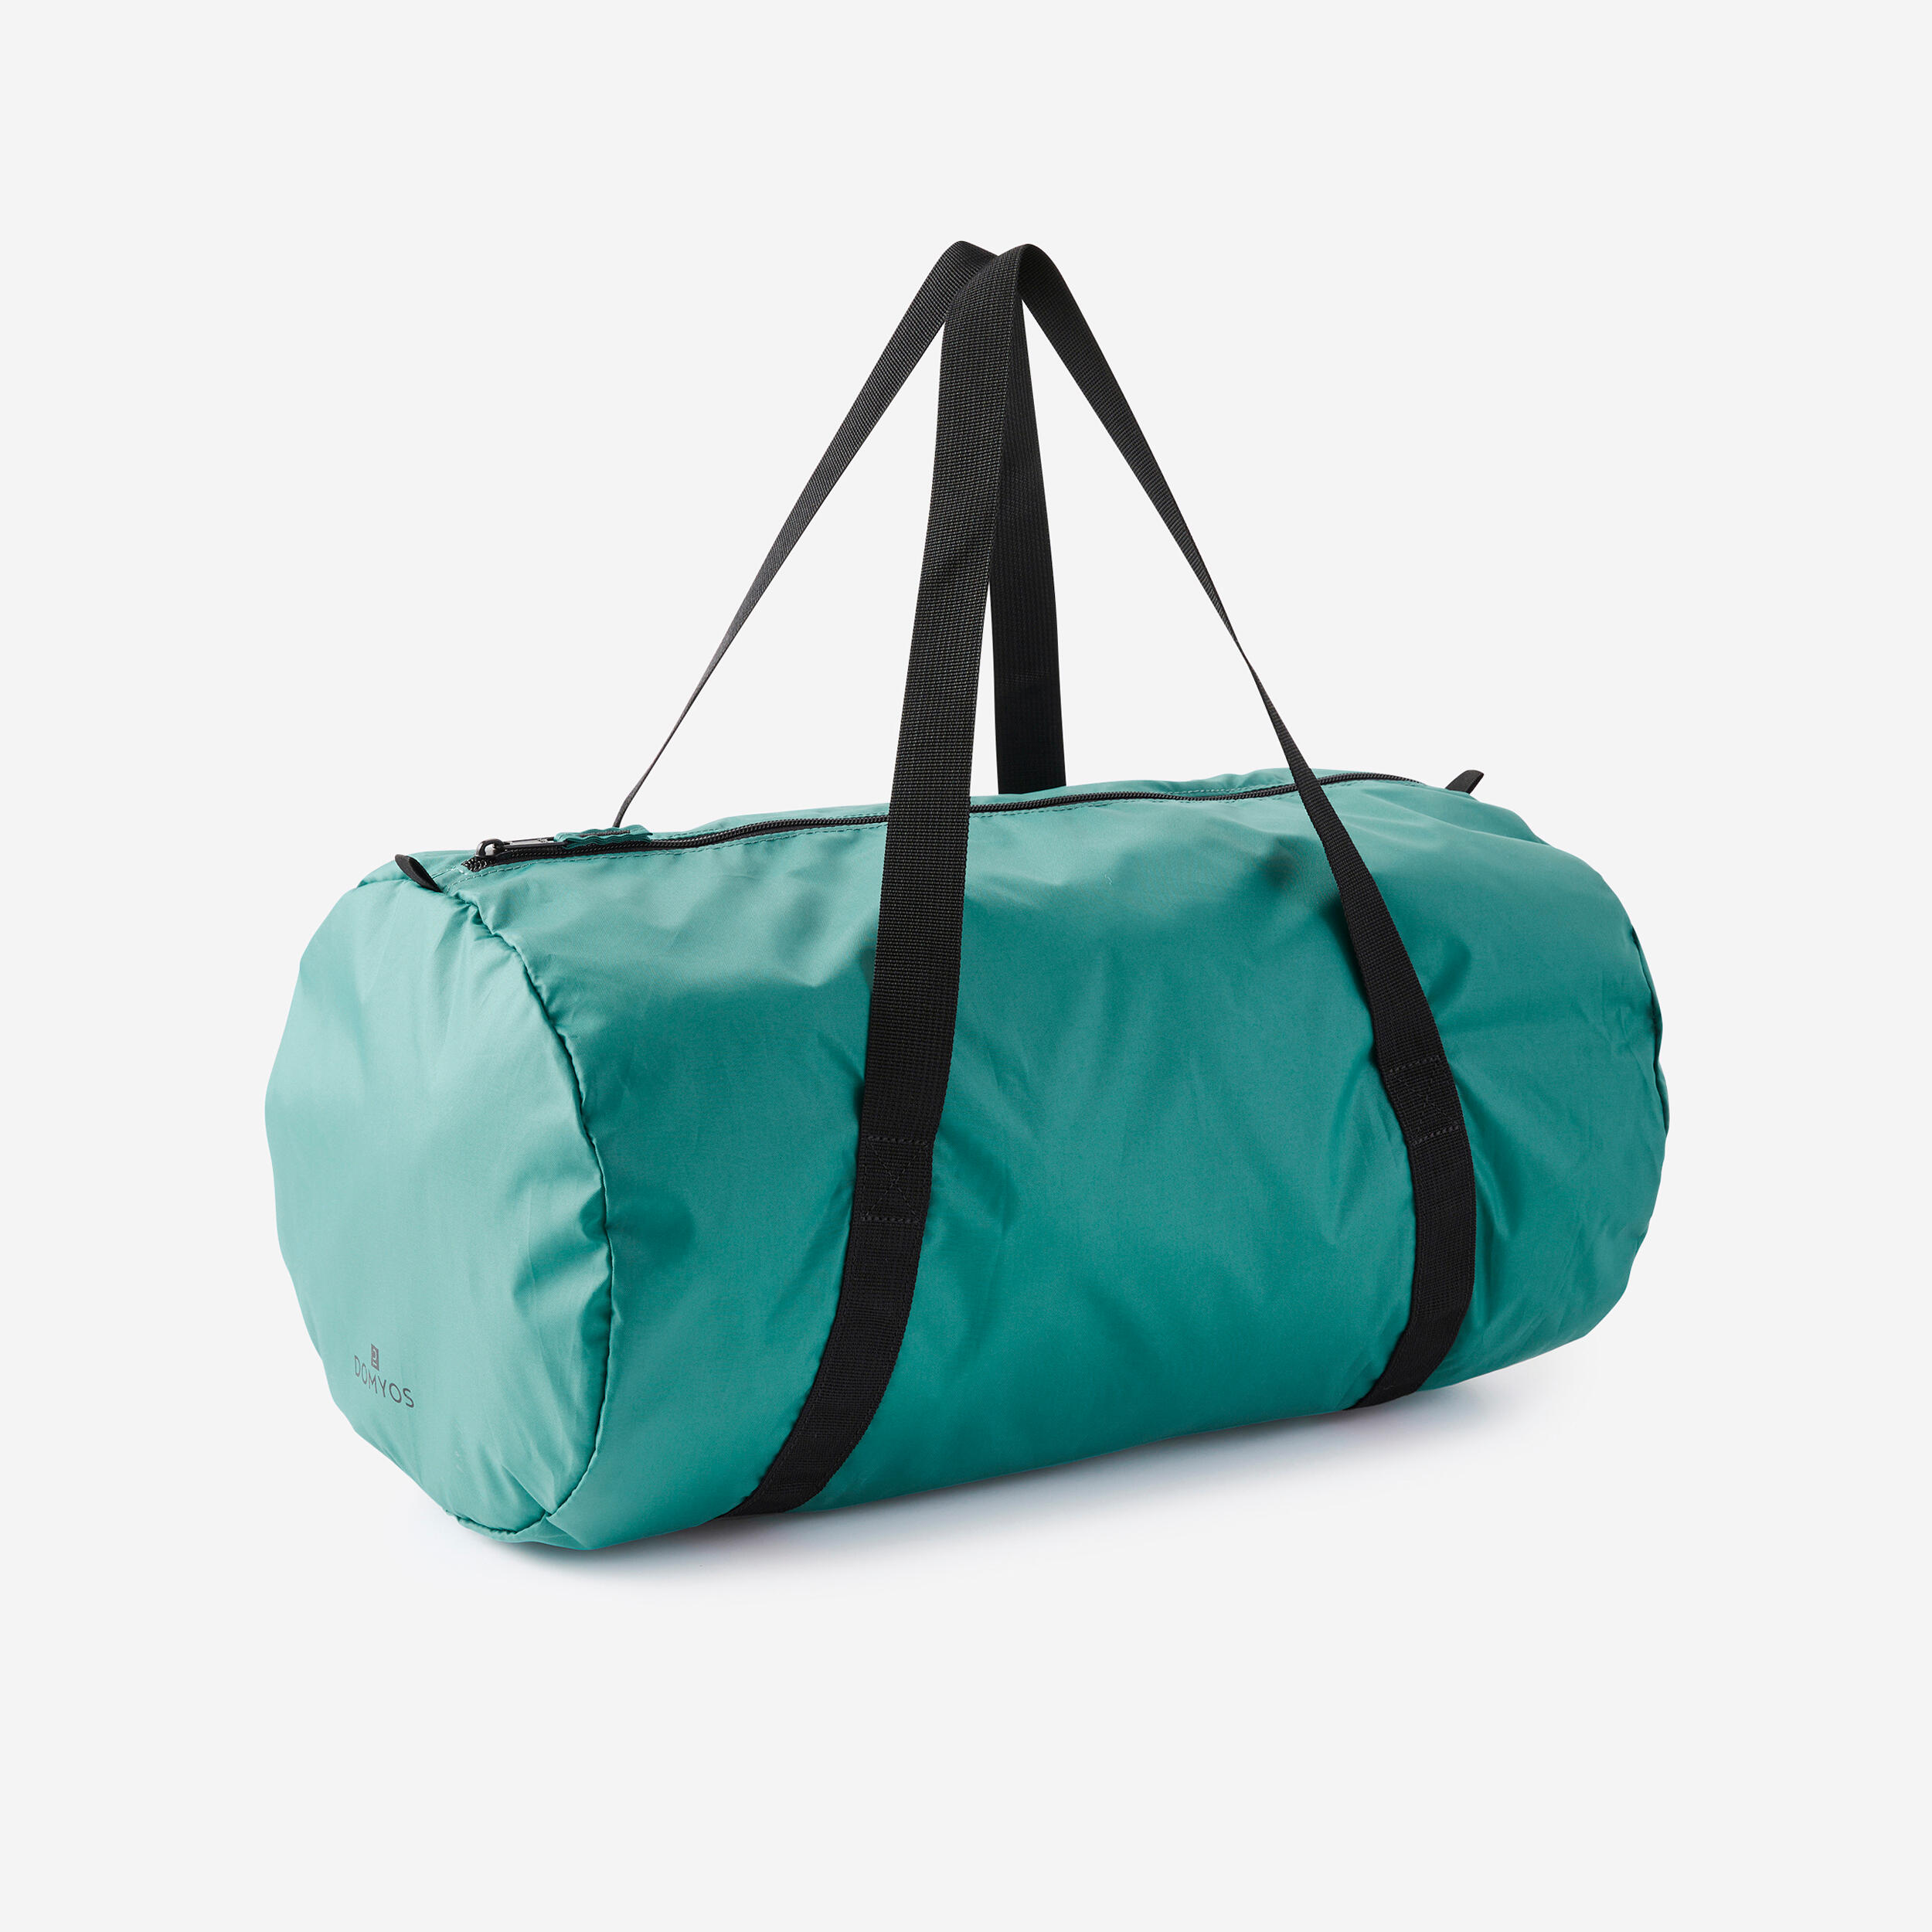 Evoc Duffle Bag 100 - Luggage | Free EU Delivery | Bergfreunde.eu